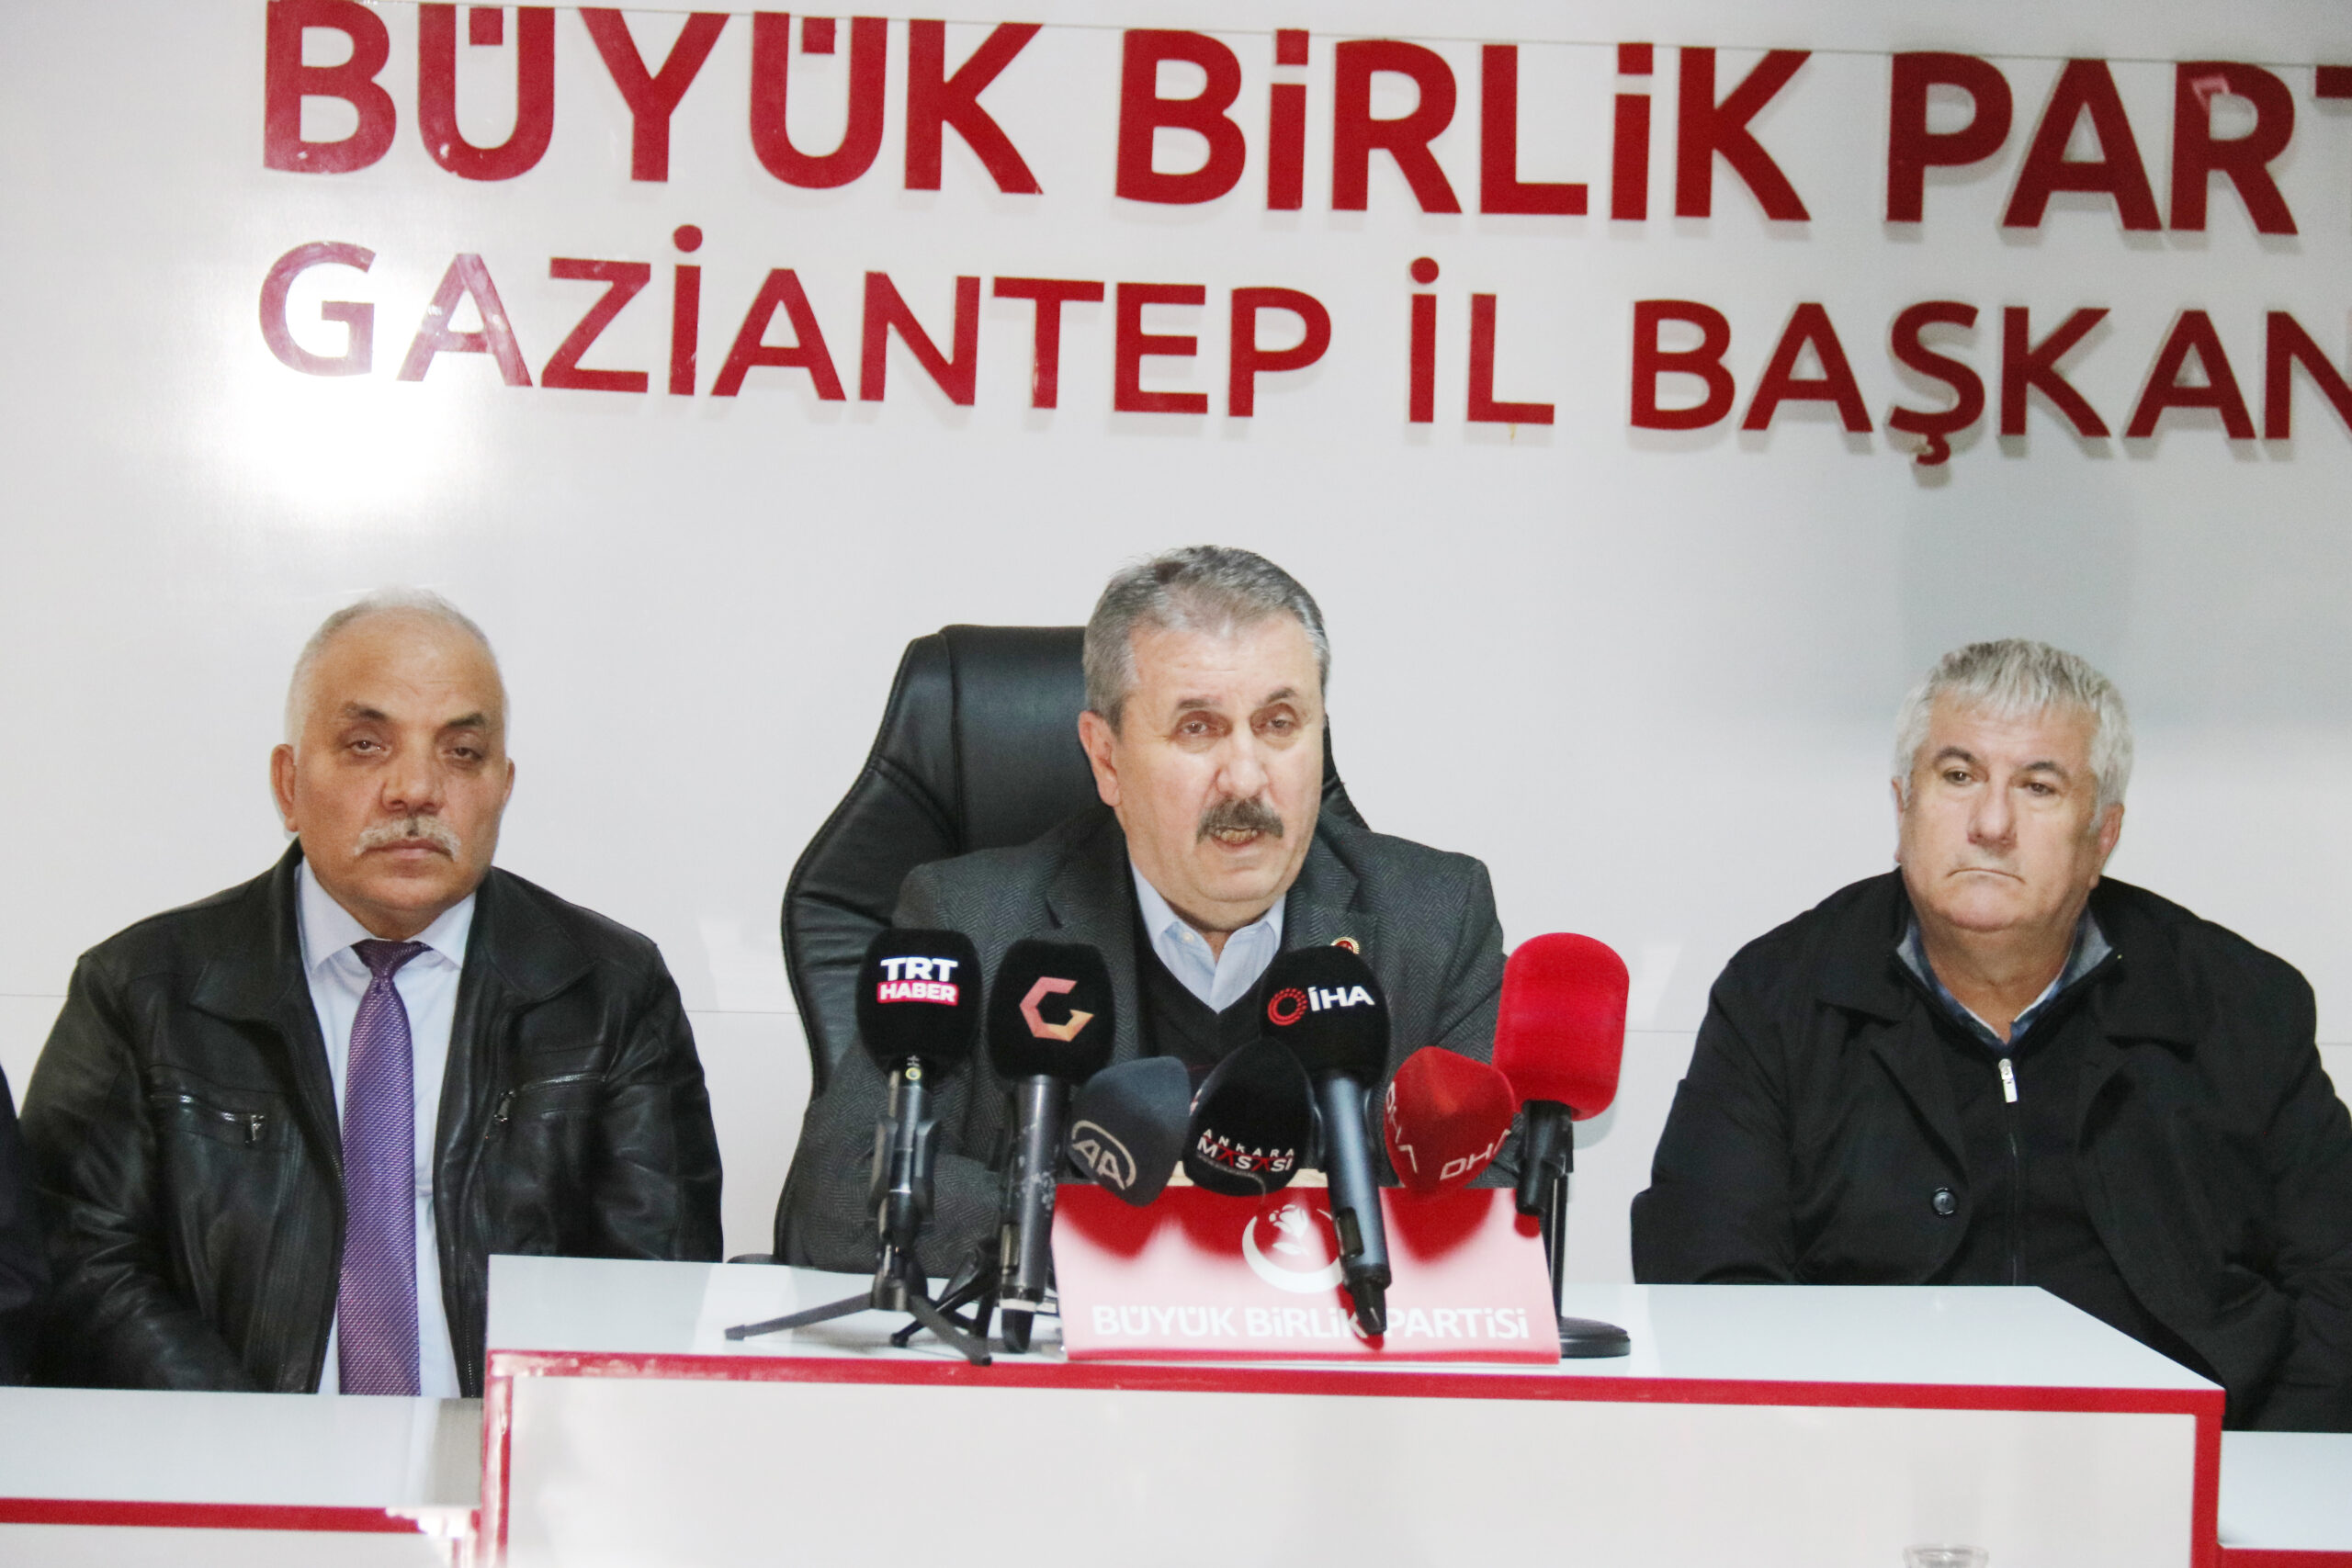 BÜYÜK Birlik Partisi Genel Başkanı Mustafa Destici: ‘ÖNLEM ALINMALI’